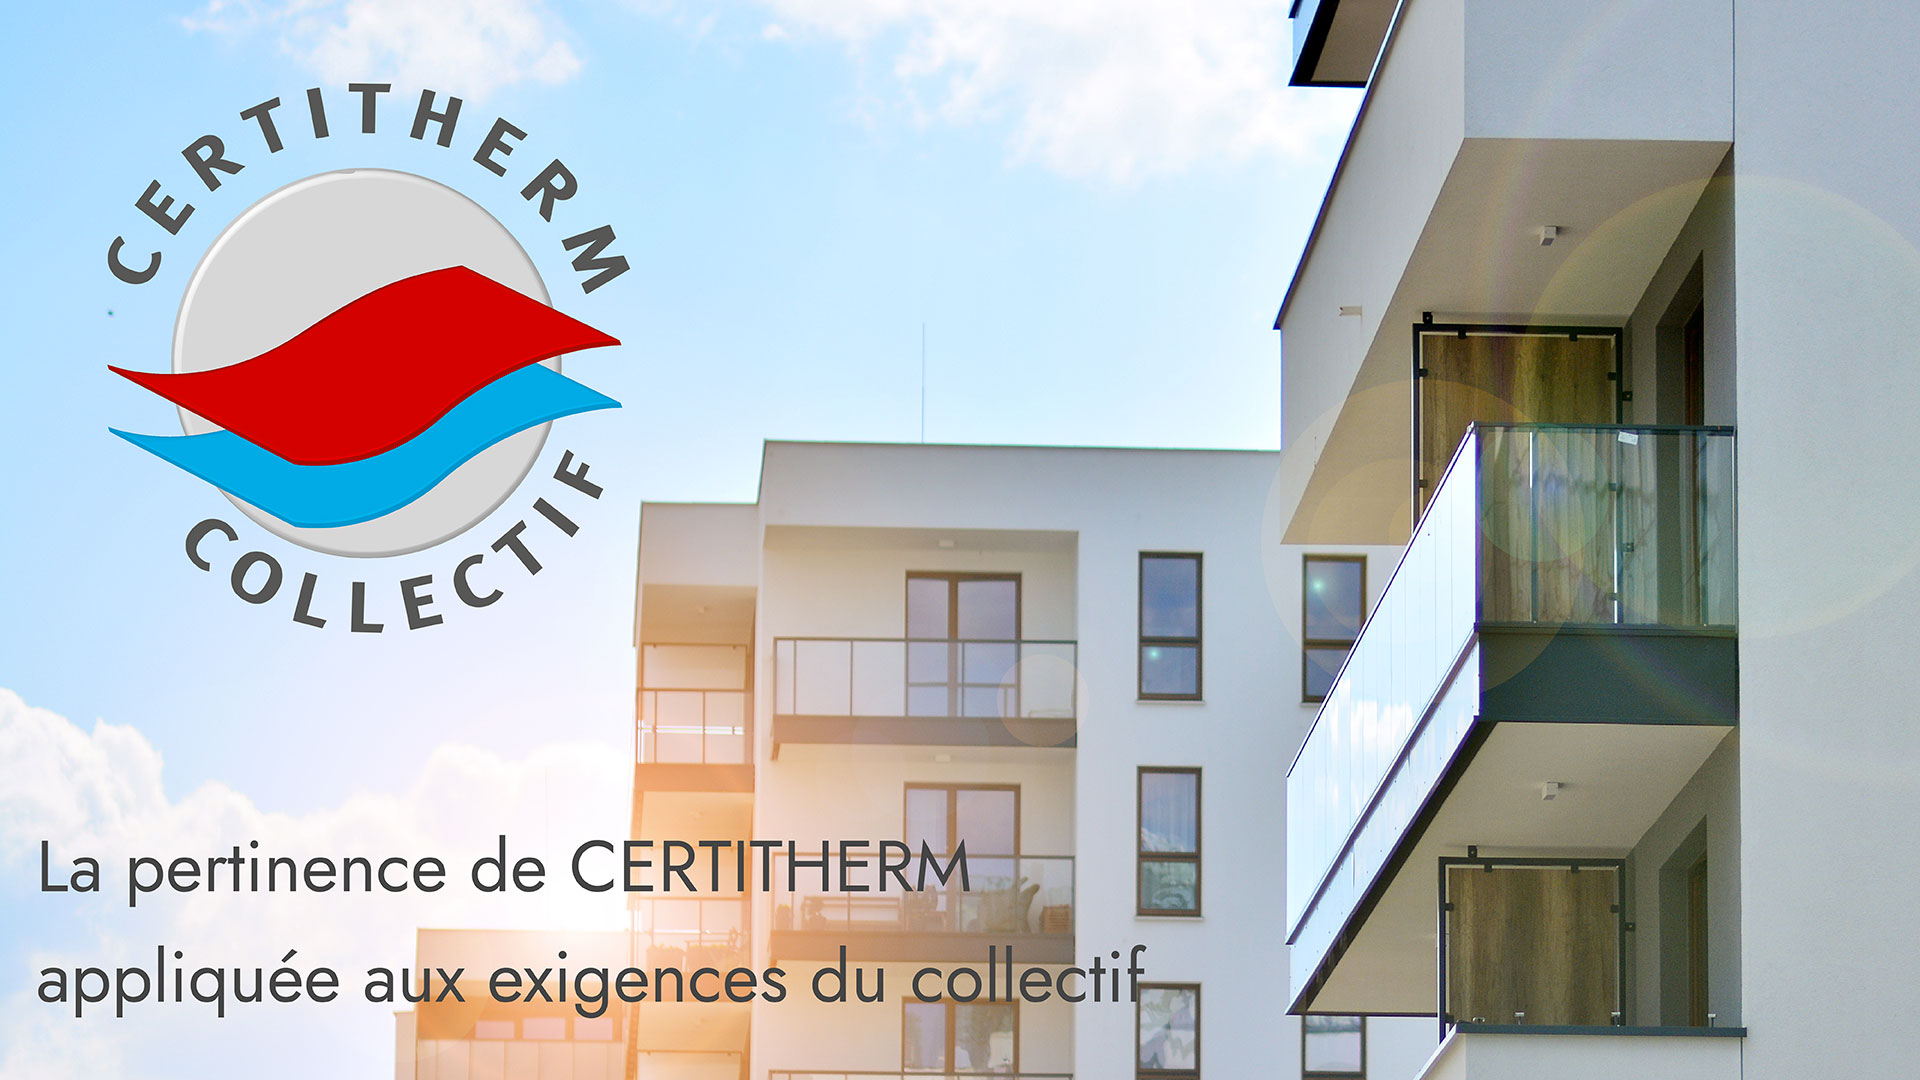 Certitherm Collectif - PCRBT en logements collectifs